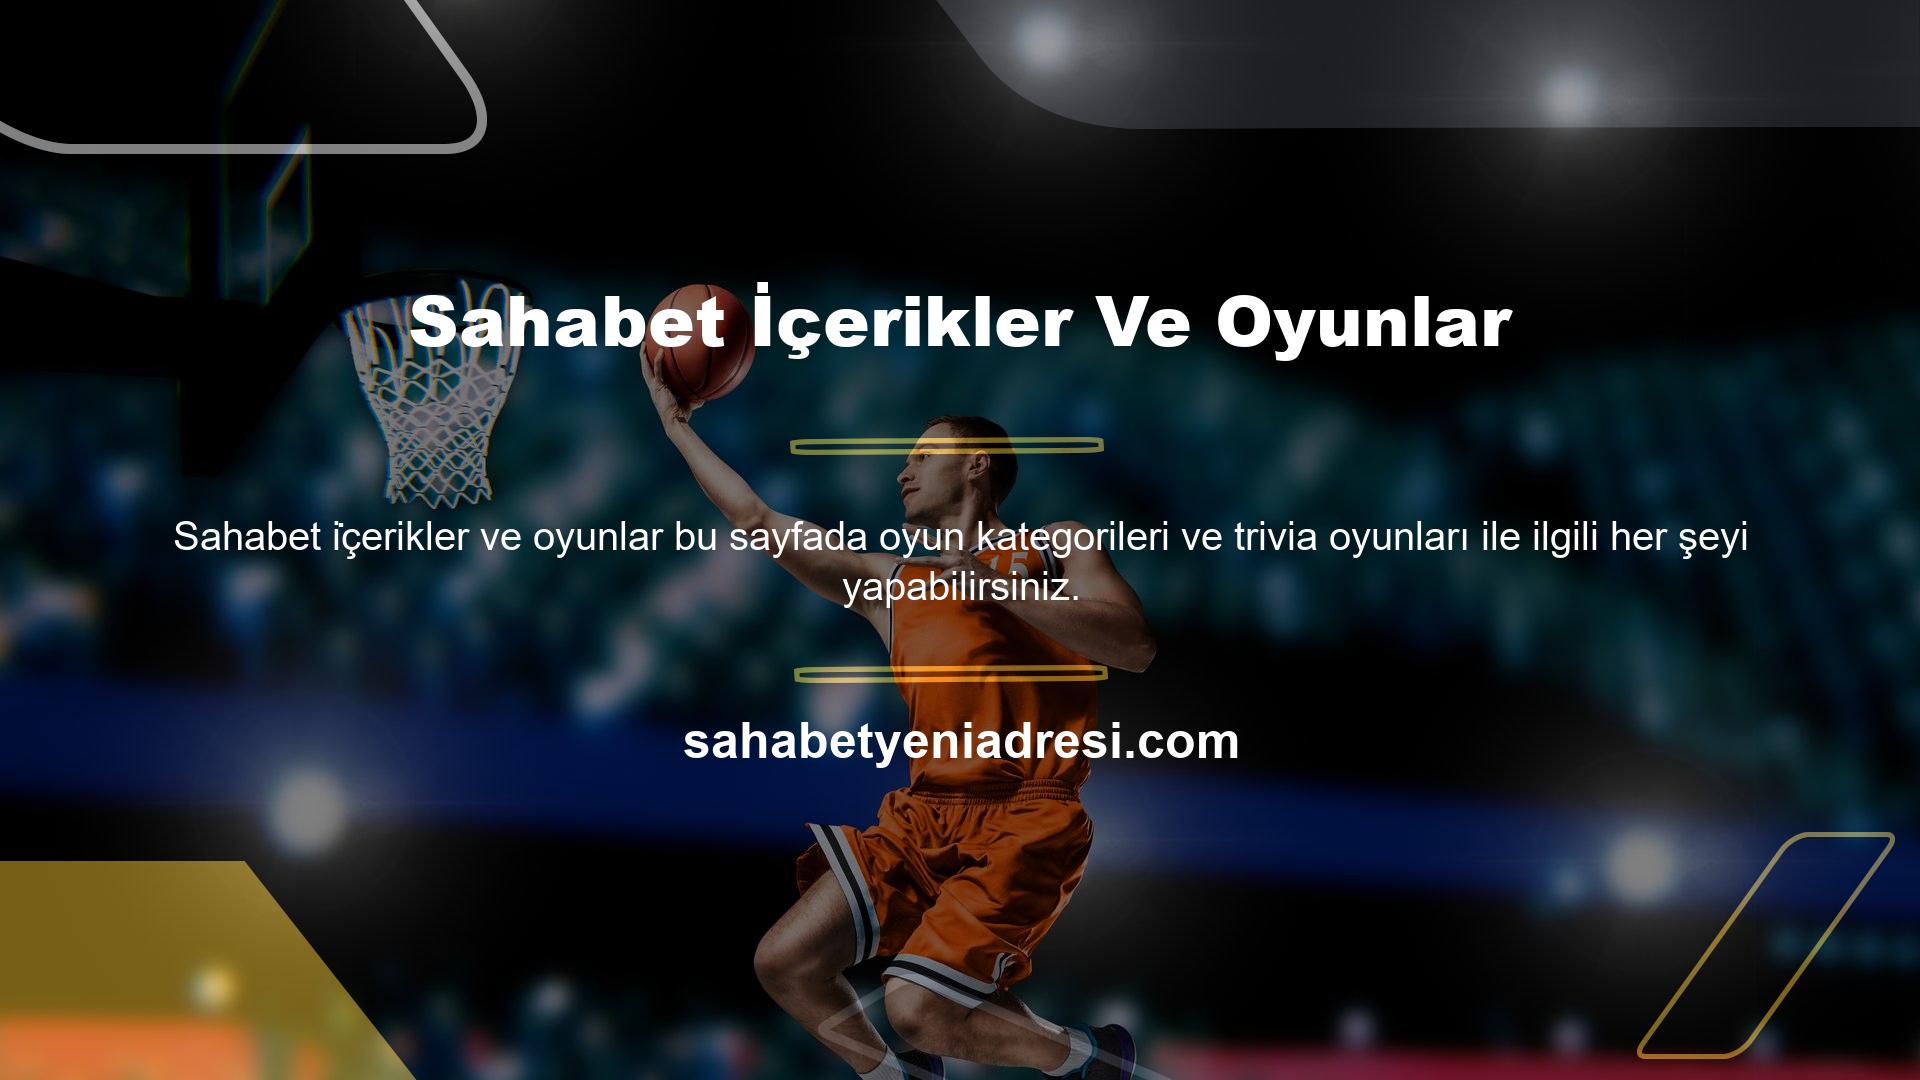 Tamamen Türkçe web sitesi ve 7/24 online destek ile oyuncular sıkılmadan saatler geçirebilirler